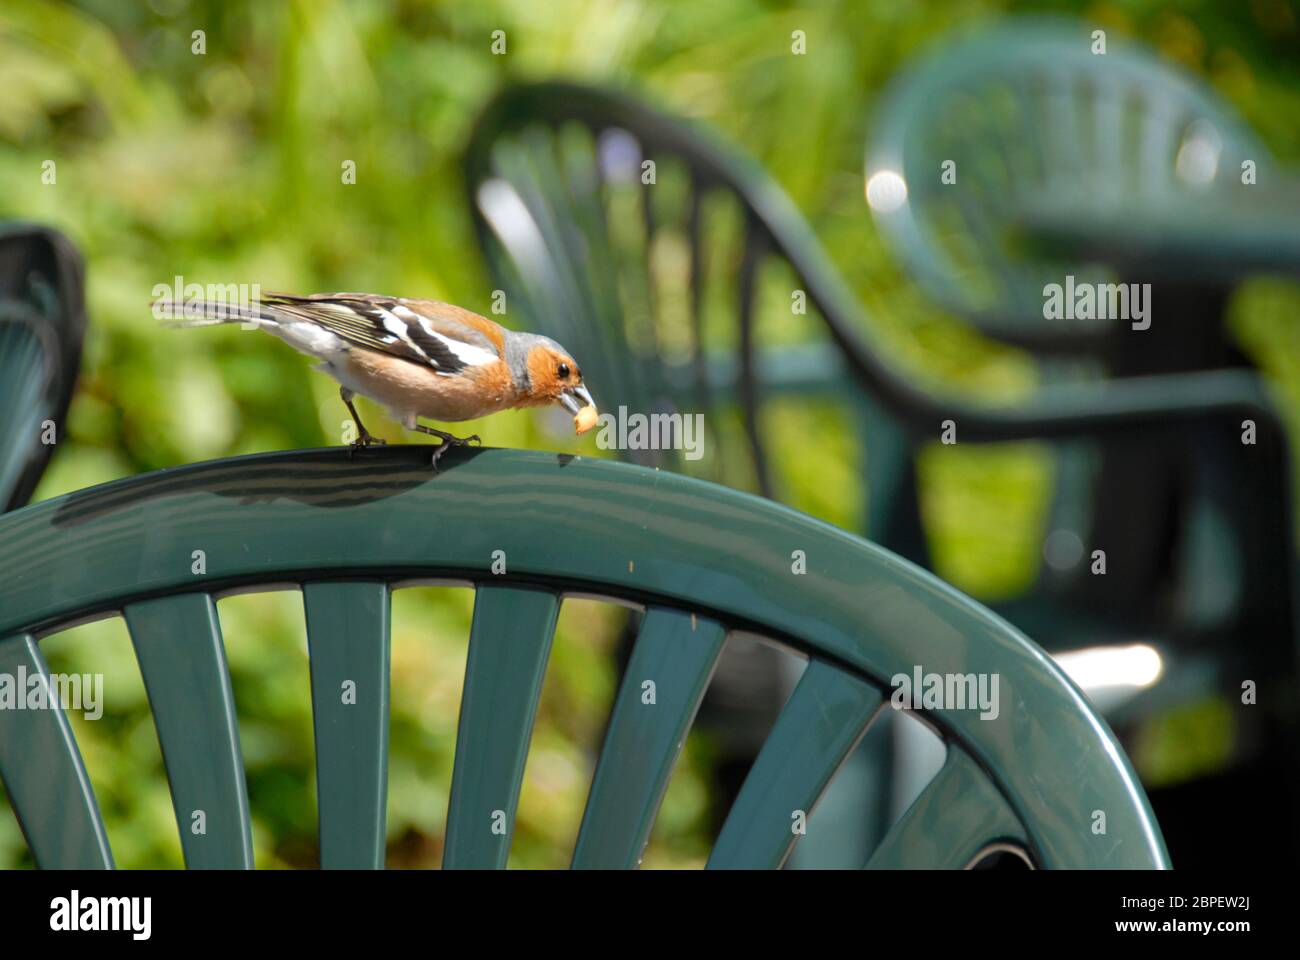 Maschio chaffinch trovare cibo sul retro di un sedile da giardino in plastica Foto Stock